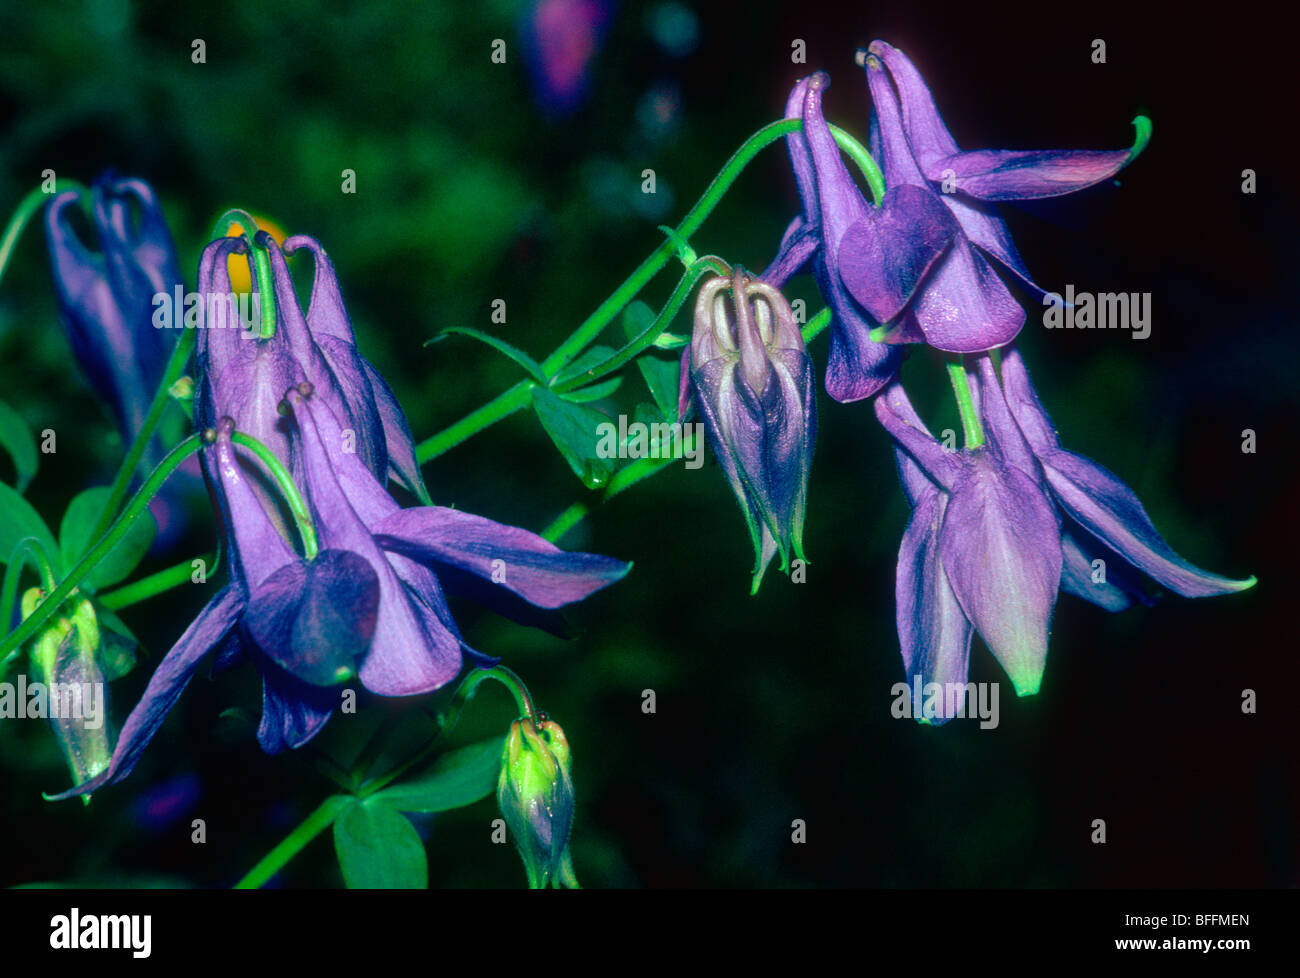 European Columbine Plant, Aquilegia vulgaris. Close-up of flowers Stock Photo